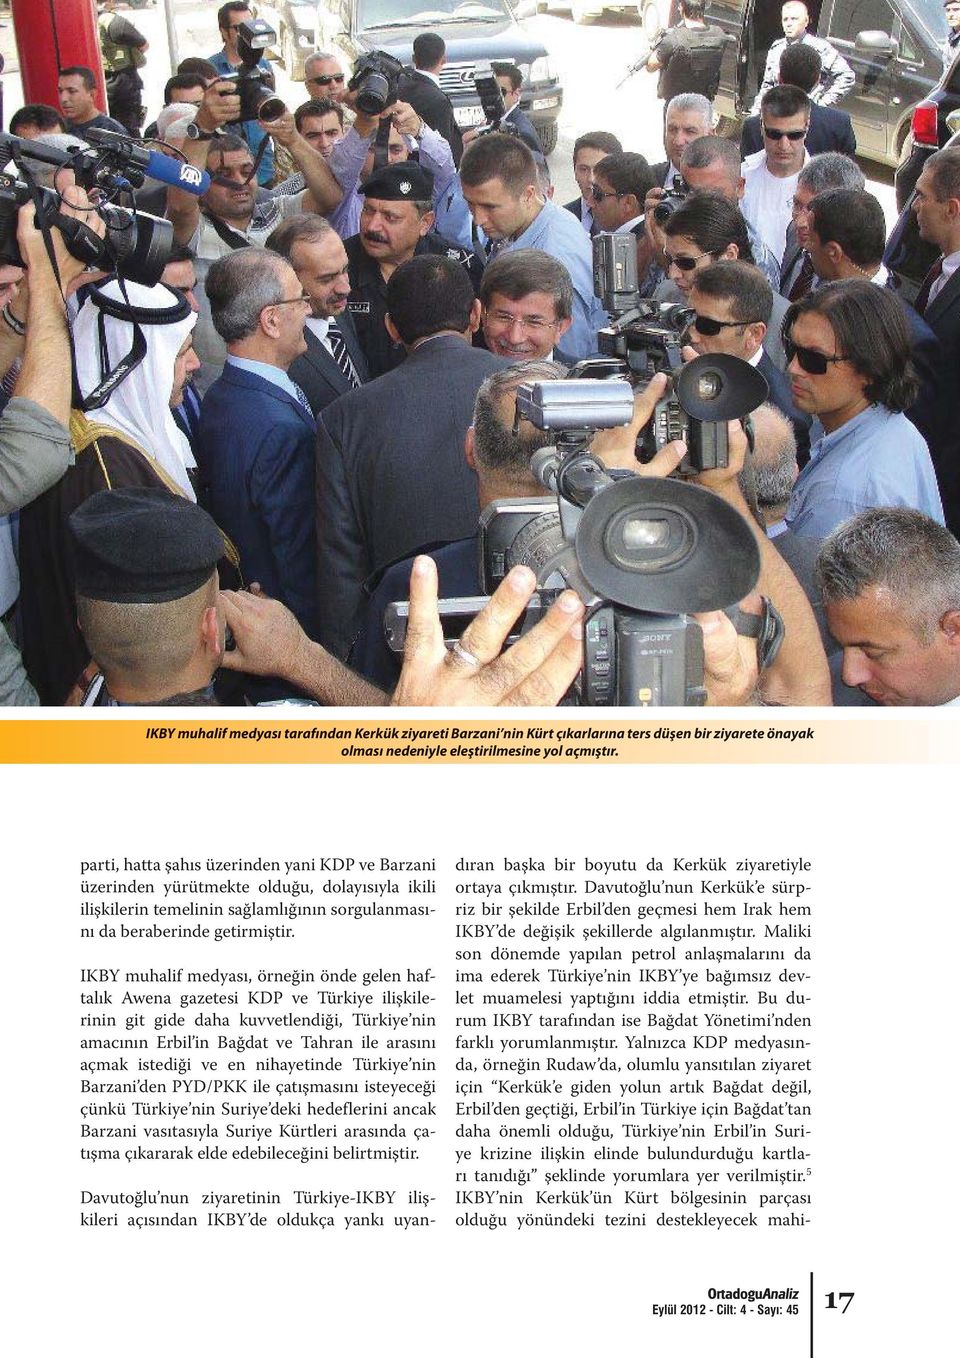 IKBY muhalif medyası, örneğin önde gelen haf- talık Awena gazetesi KDP ve Türkiye ilişkilerinin git gide daha kuvvetlendiği, Türkiye nin amacının Erbil in Bağdat ve Tahran ile arasını açmak istediği